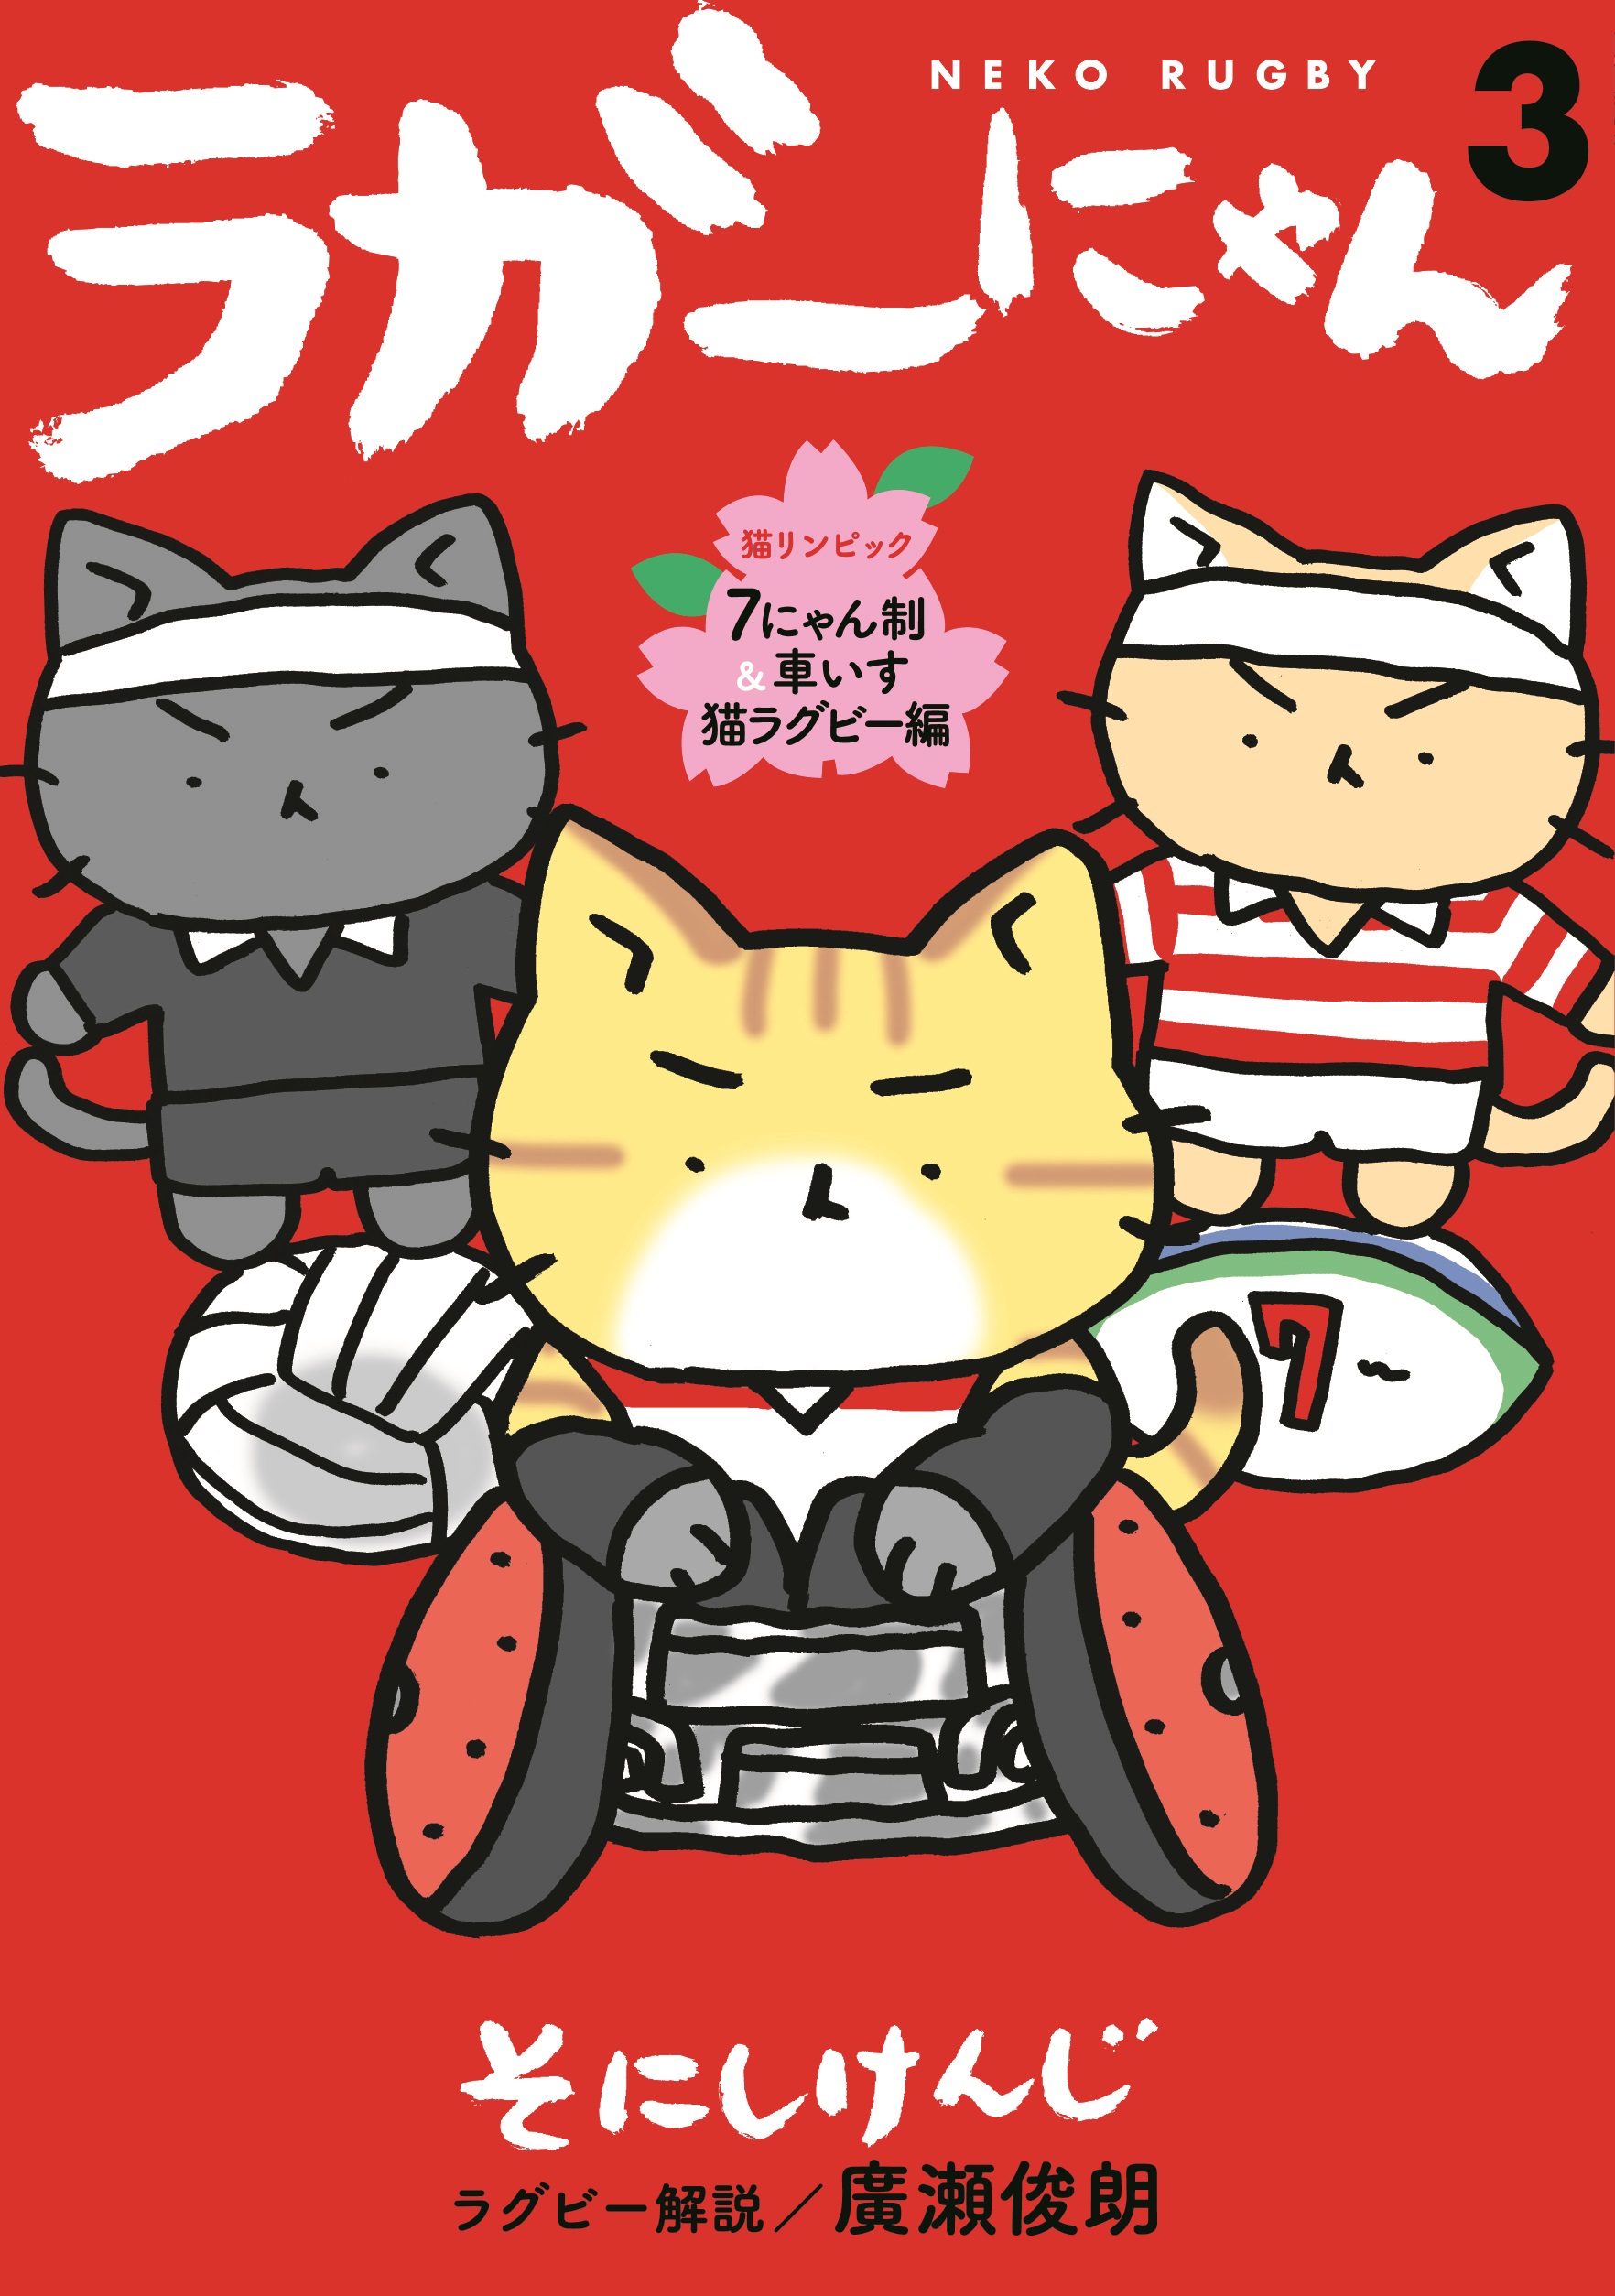 猫ピッチャー ねこねこ日本史 の作者 そにしけんじさんが描くラグビー 猫まんが ラガーにゃん 最新3巻が予約受付中 株式会社光文社のプレスリリース